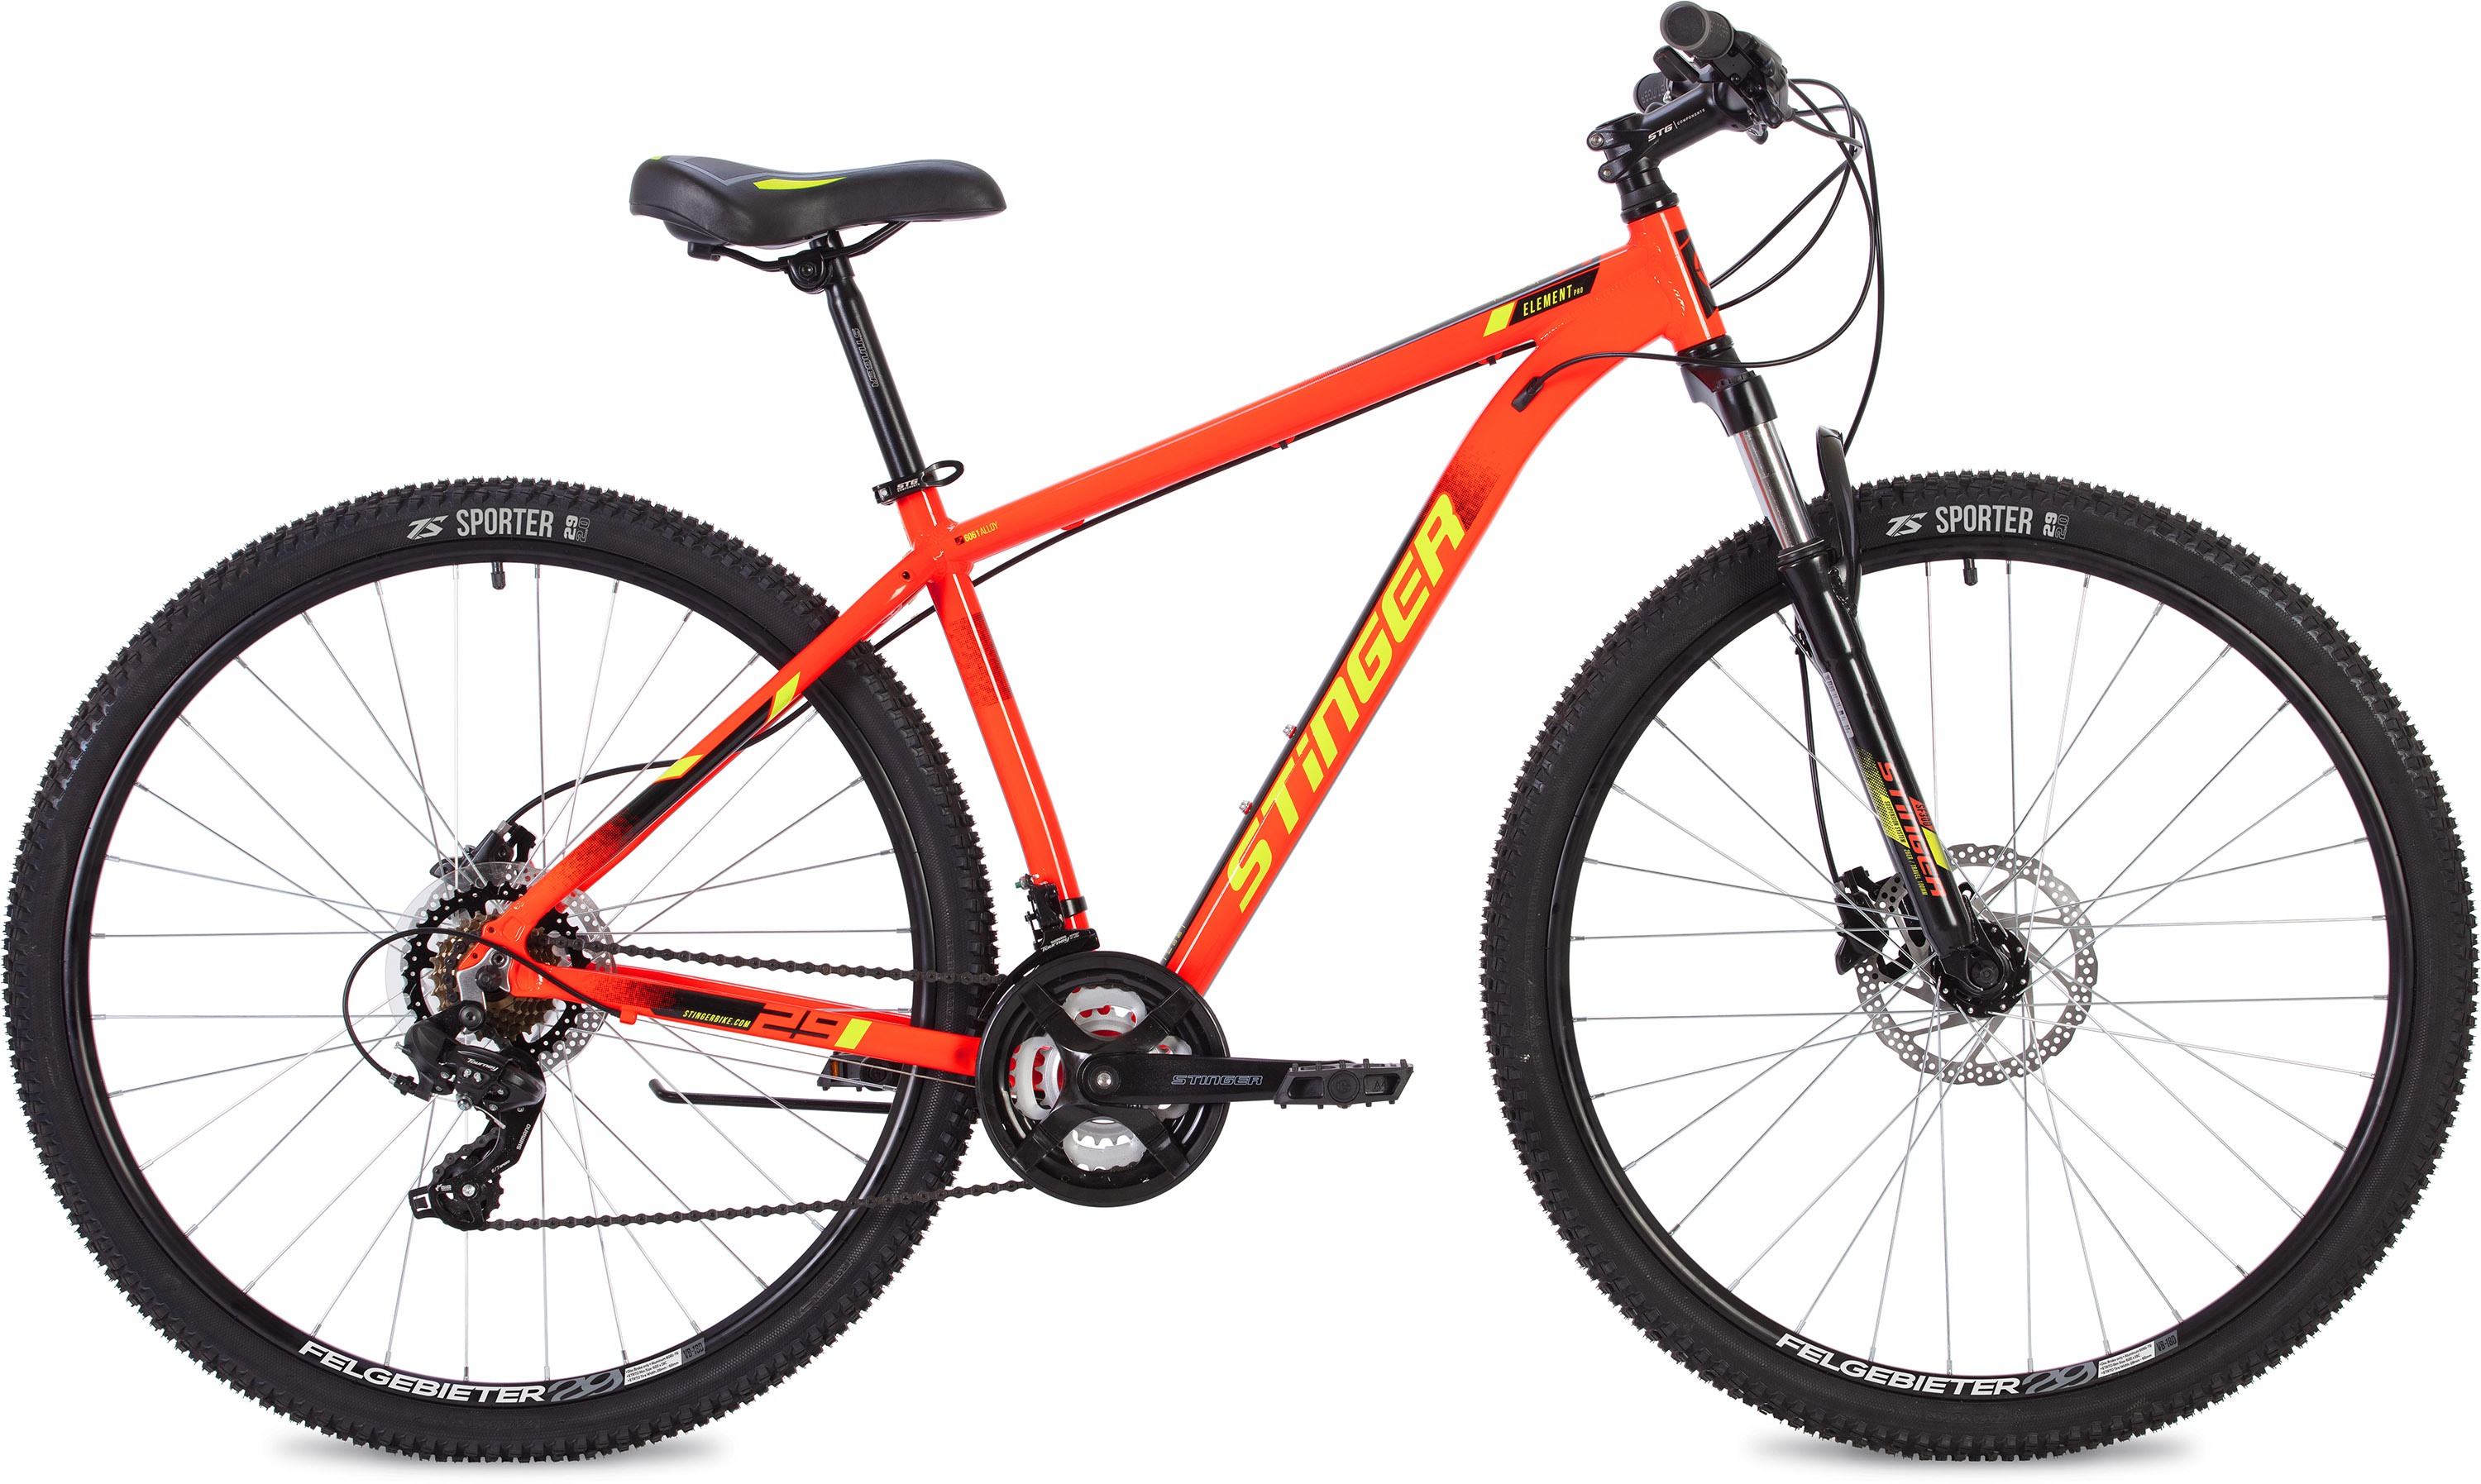  Отзывы о Горном велосипеде Stinger Element Pro 27 2020